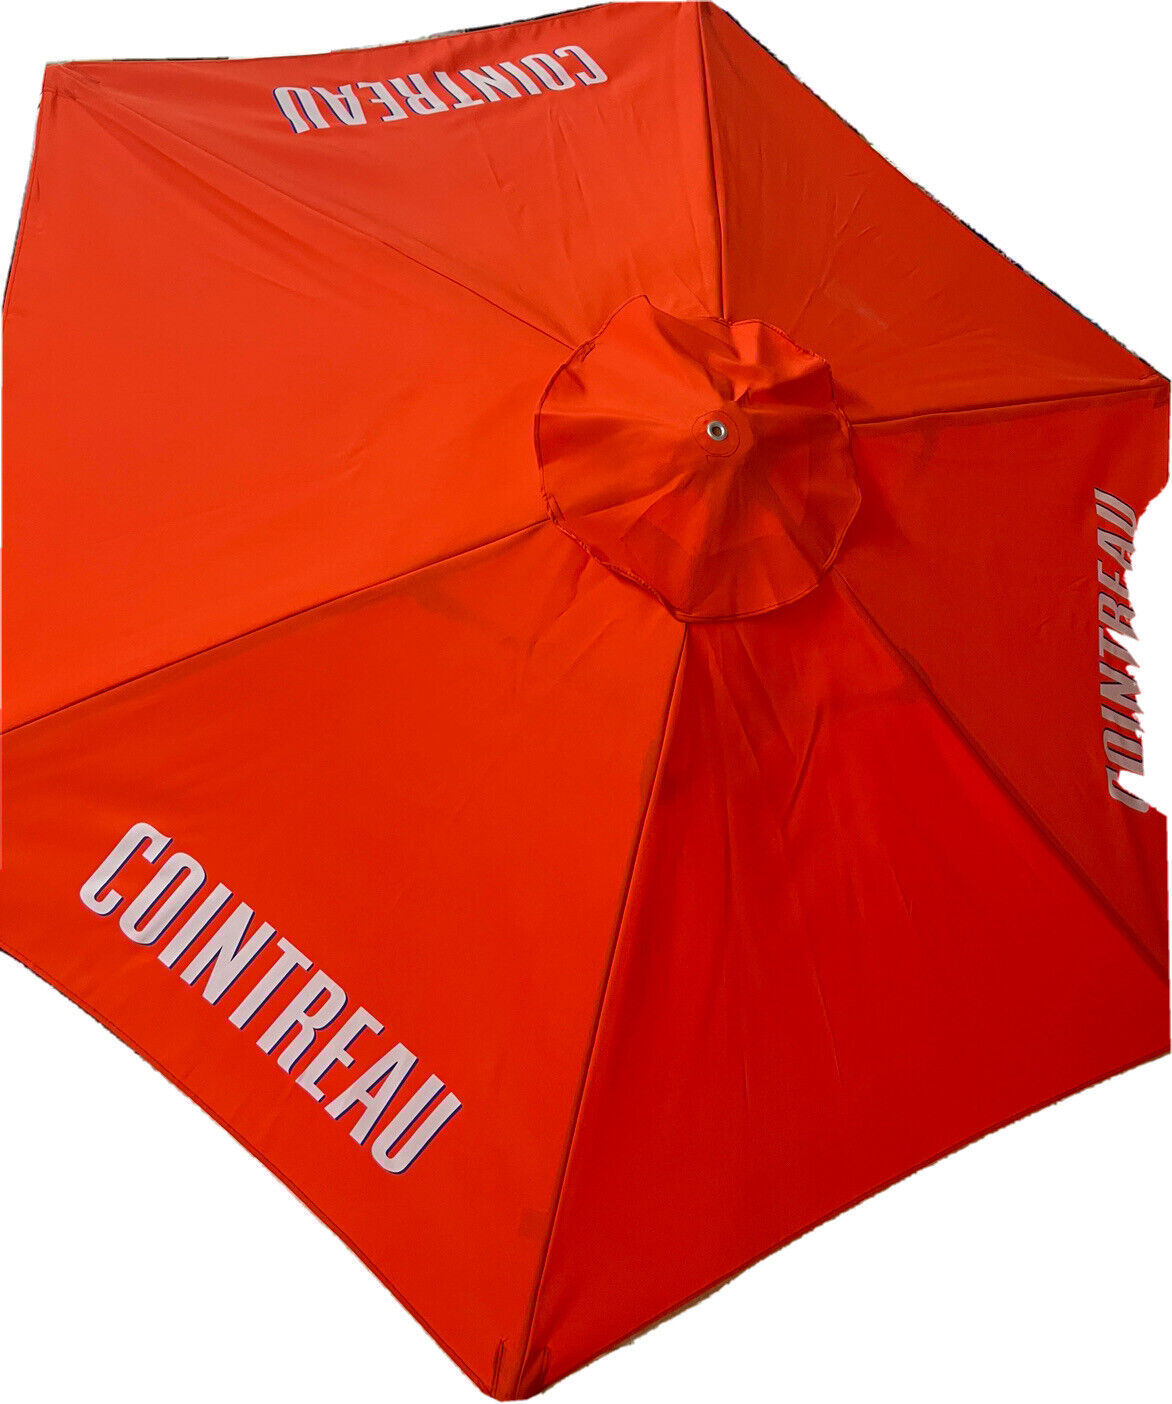 outdoor umbrellas for garden, pool Beach Umbrella ,Patio Umbrella Table Umbrlla